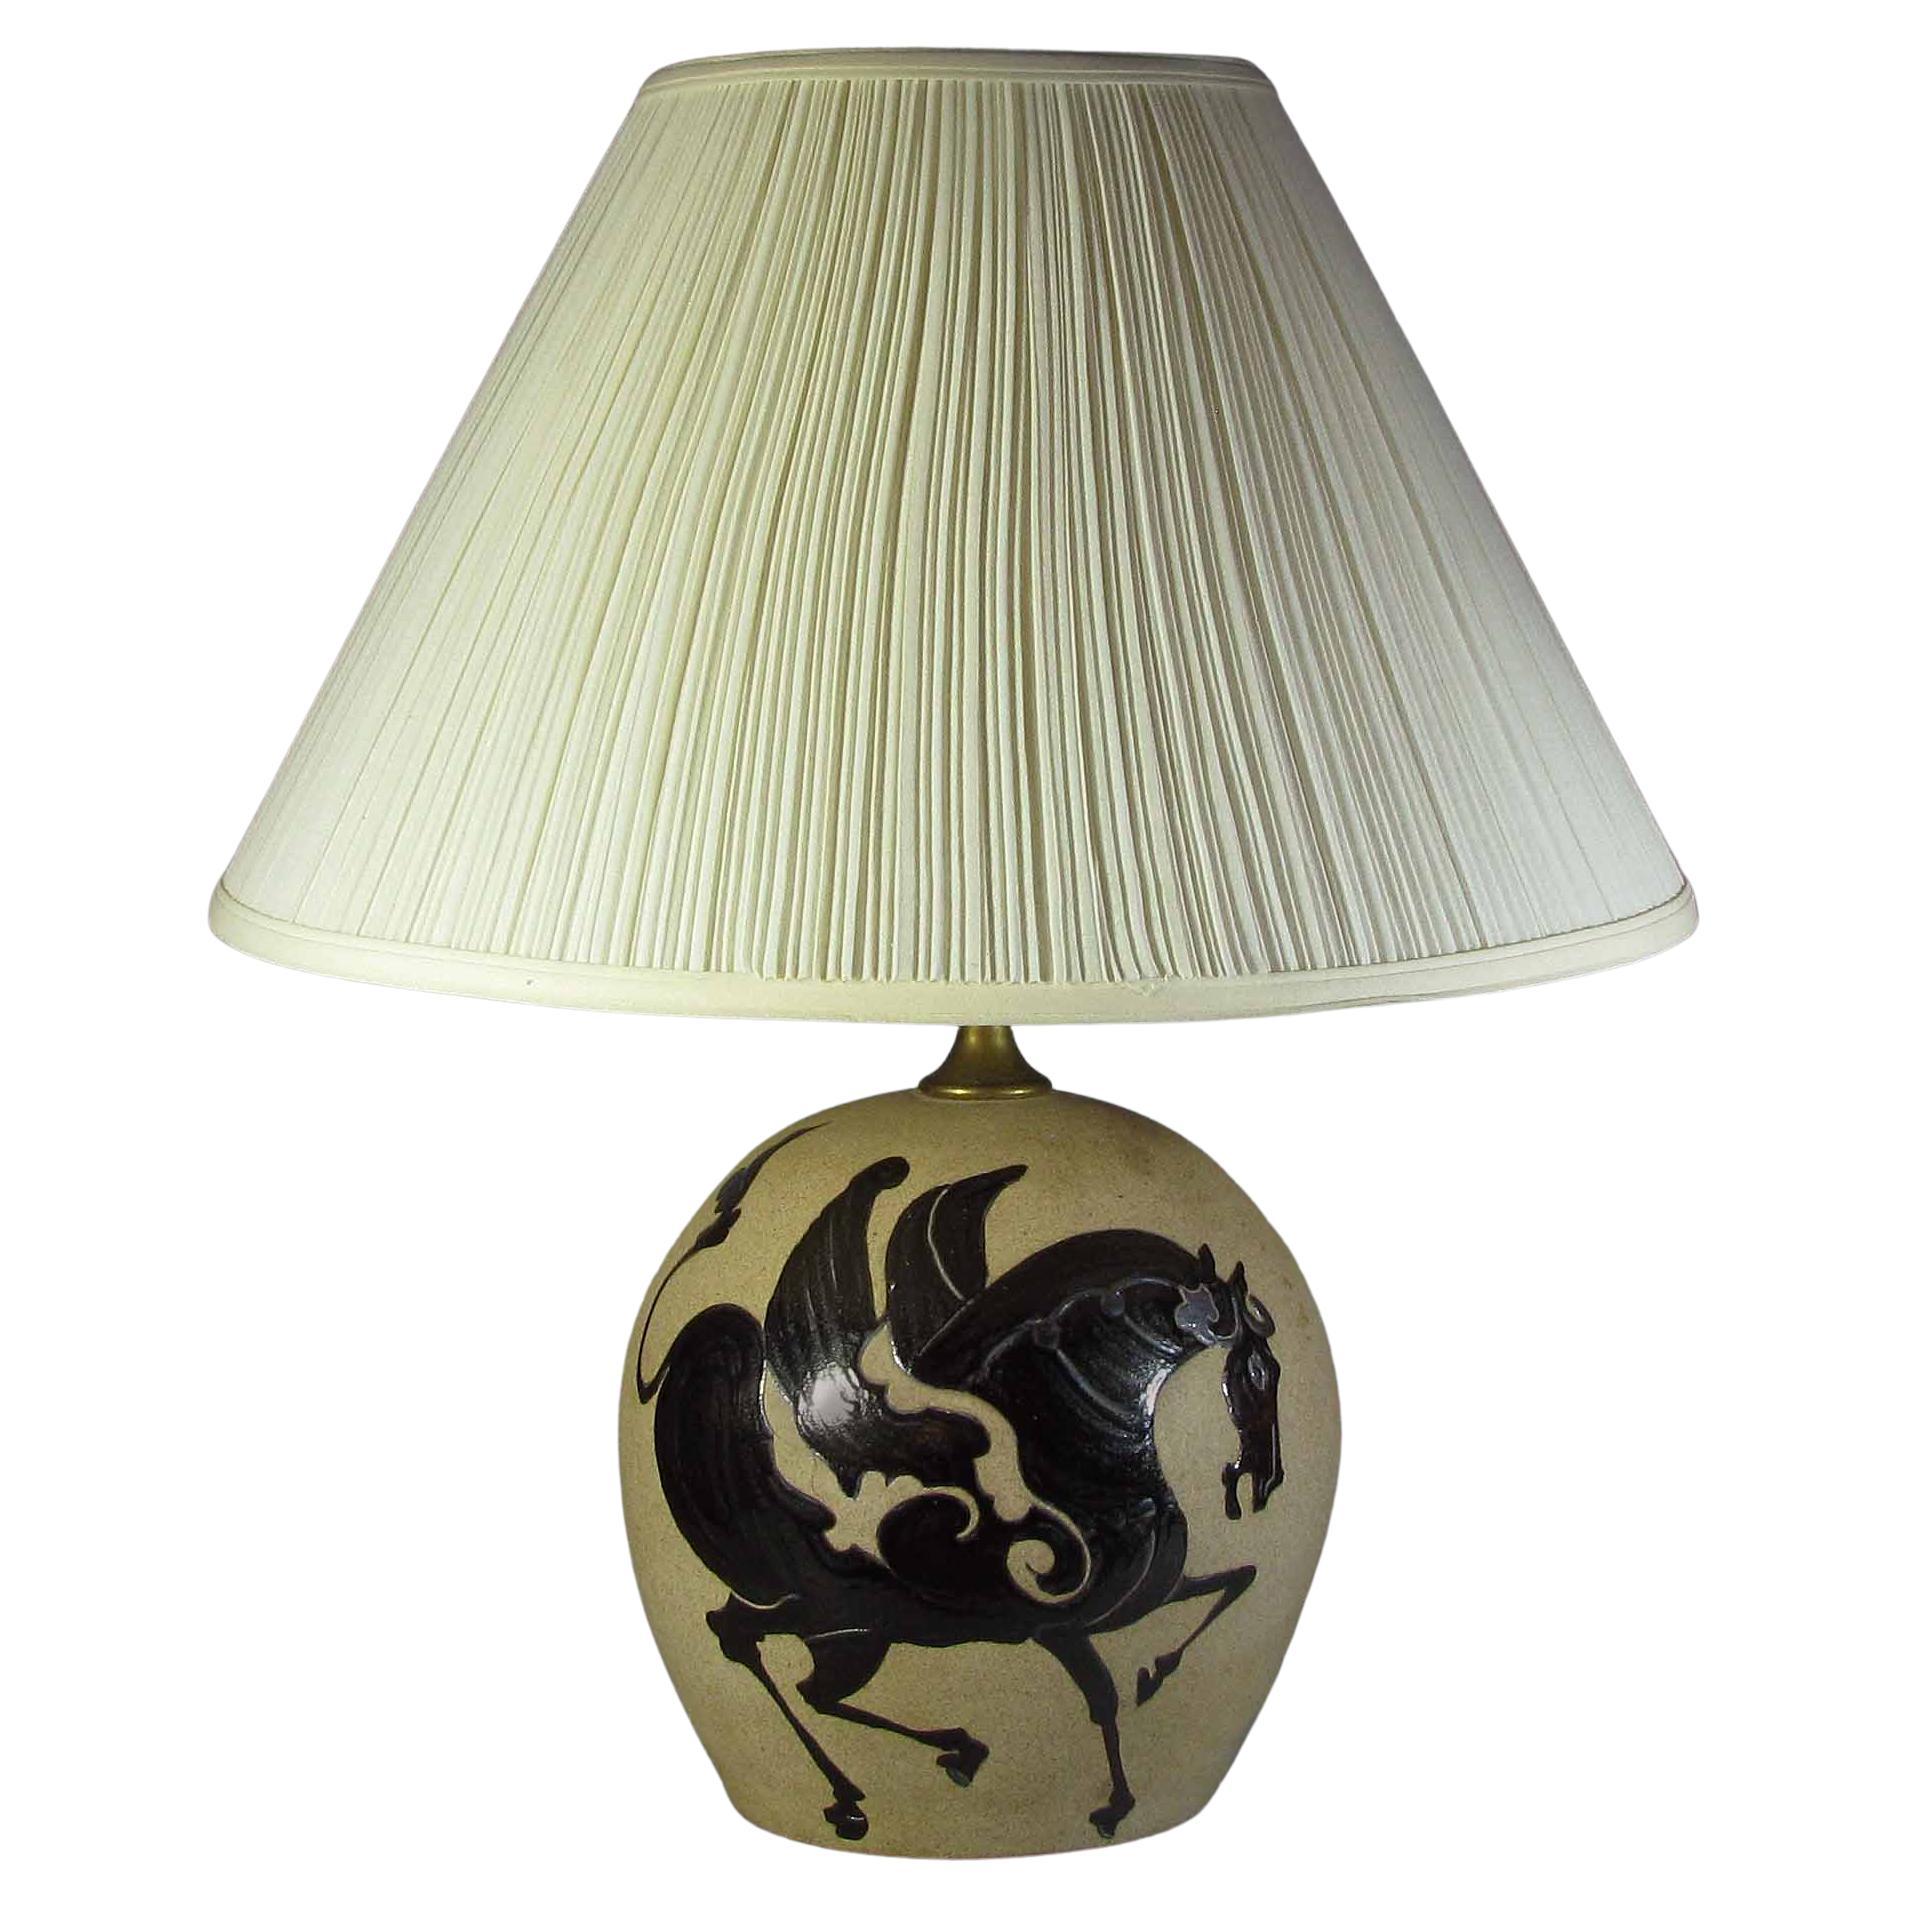 A Large Bulbous Studio Pottery “PEGASUS” Lamp For Sale